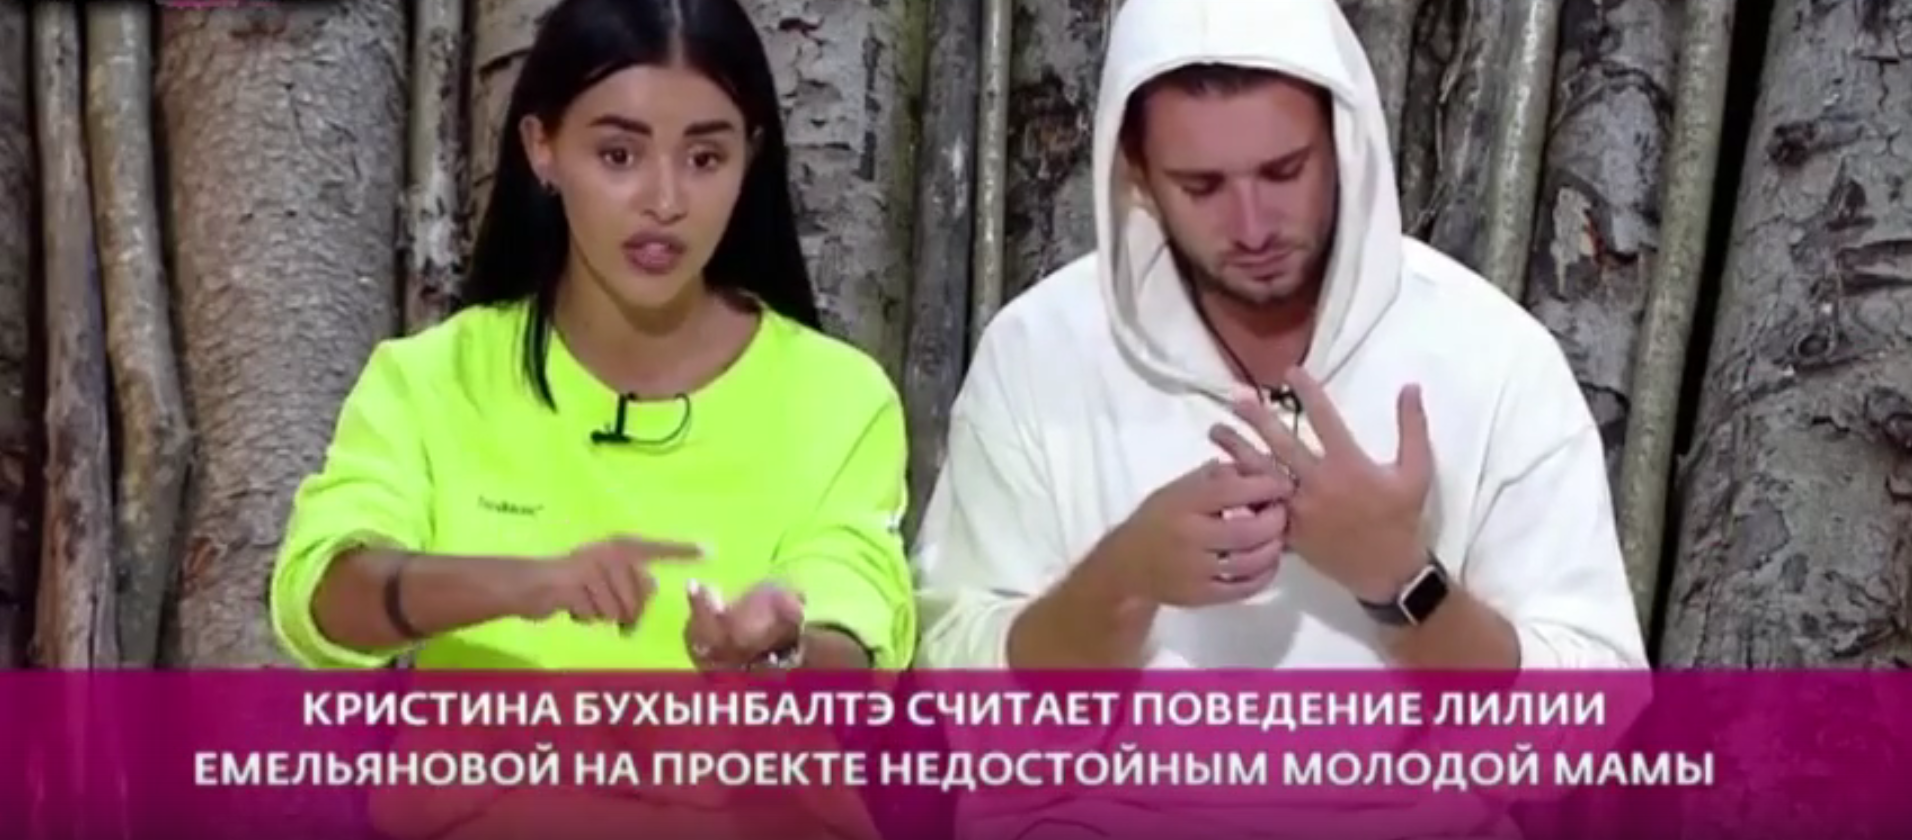 Бухынбалтэ переживает из-за репутации молодой матери Лилии Емельяновой